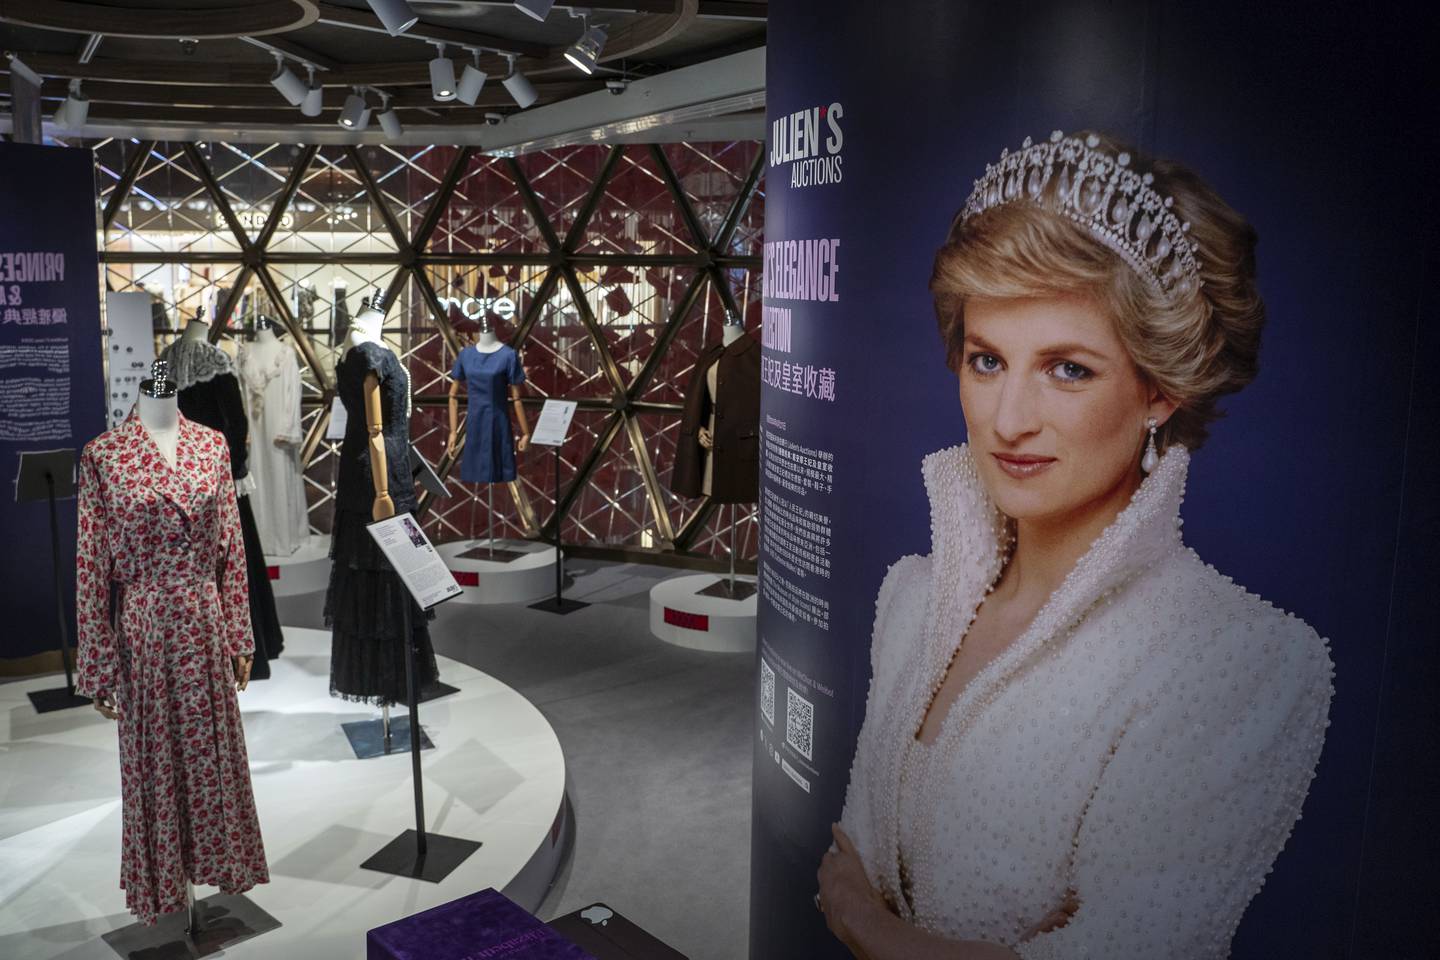 Prinsesse Diana er langt fra glemt – og interessen for også hennes mange flotte antrekk er stor, ifølge auksjonshuset Julien's. Foto: Vernon Yuen / AP / NTB